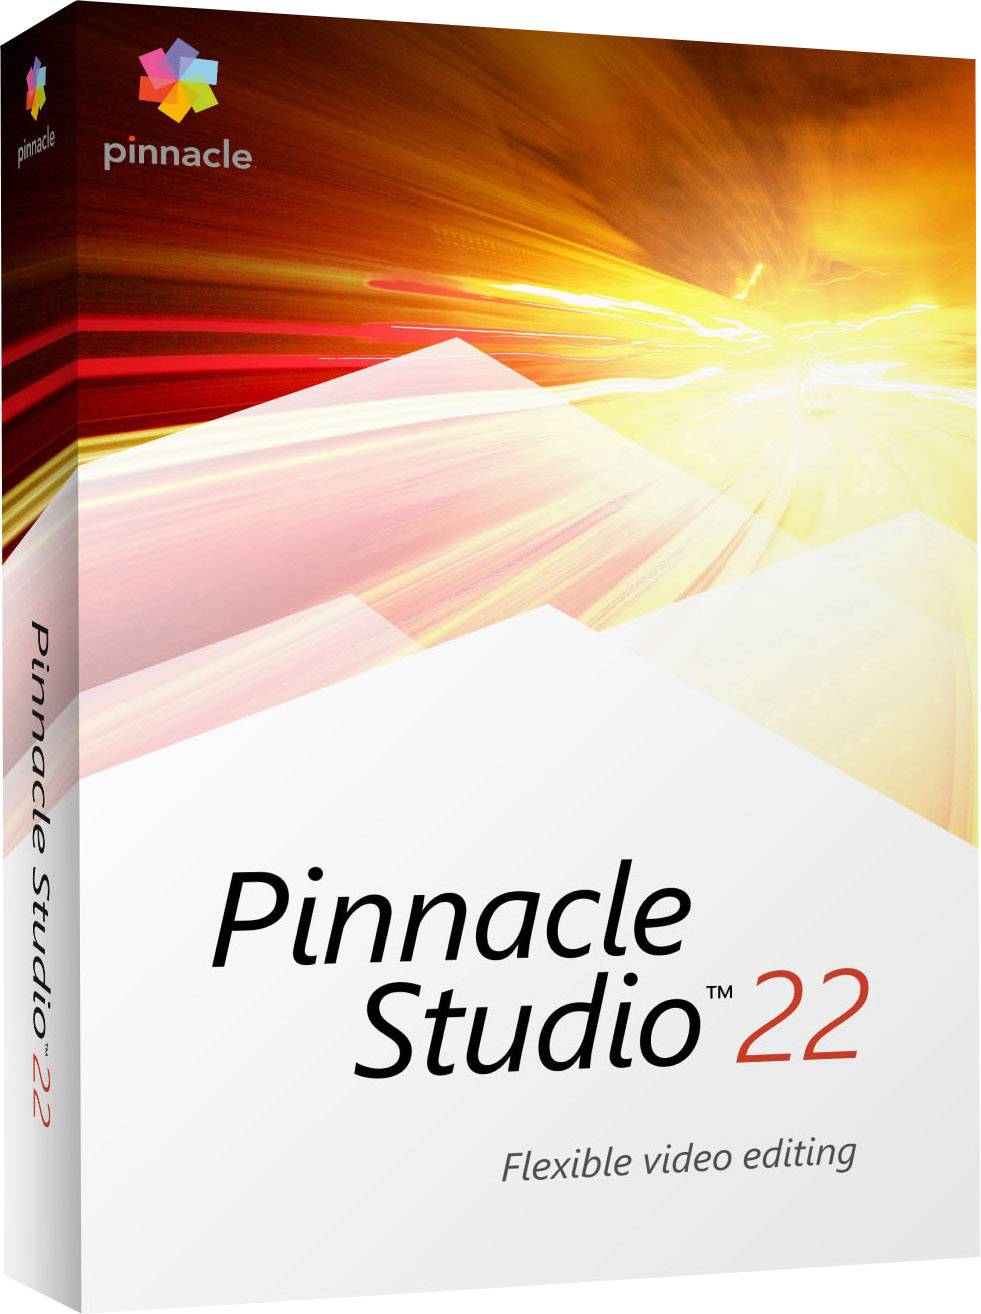 pinnacle studio 22 reviews